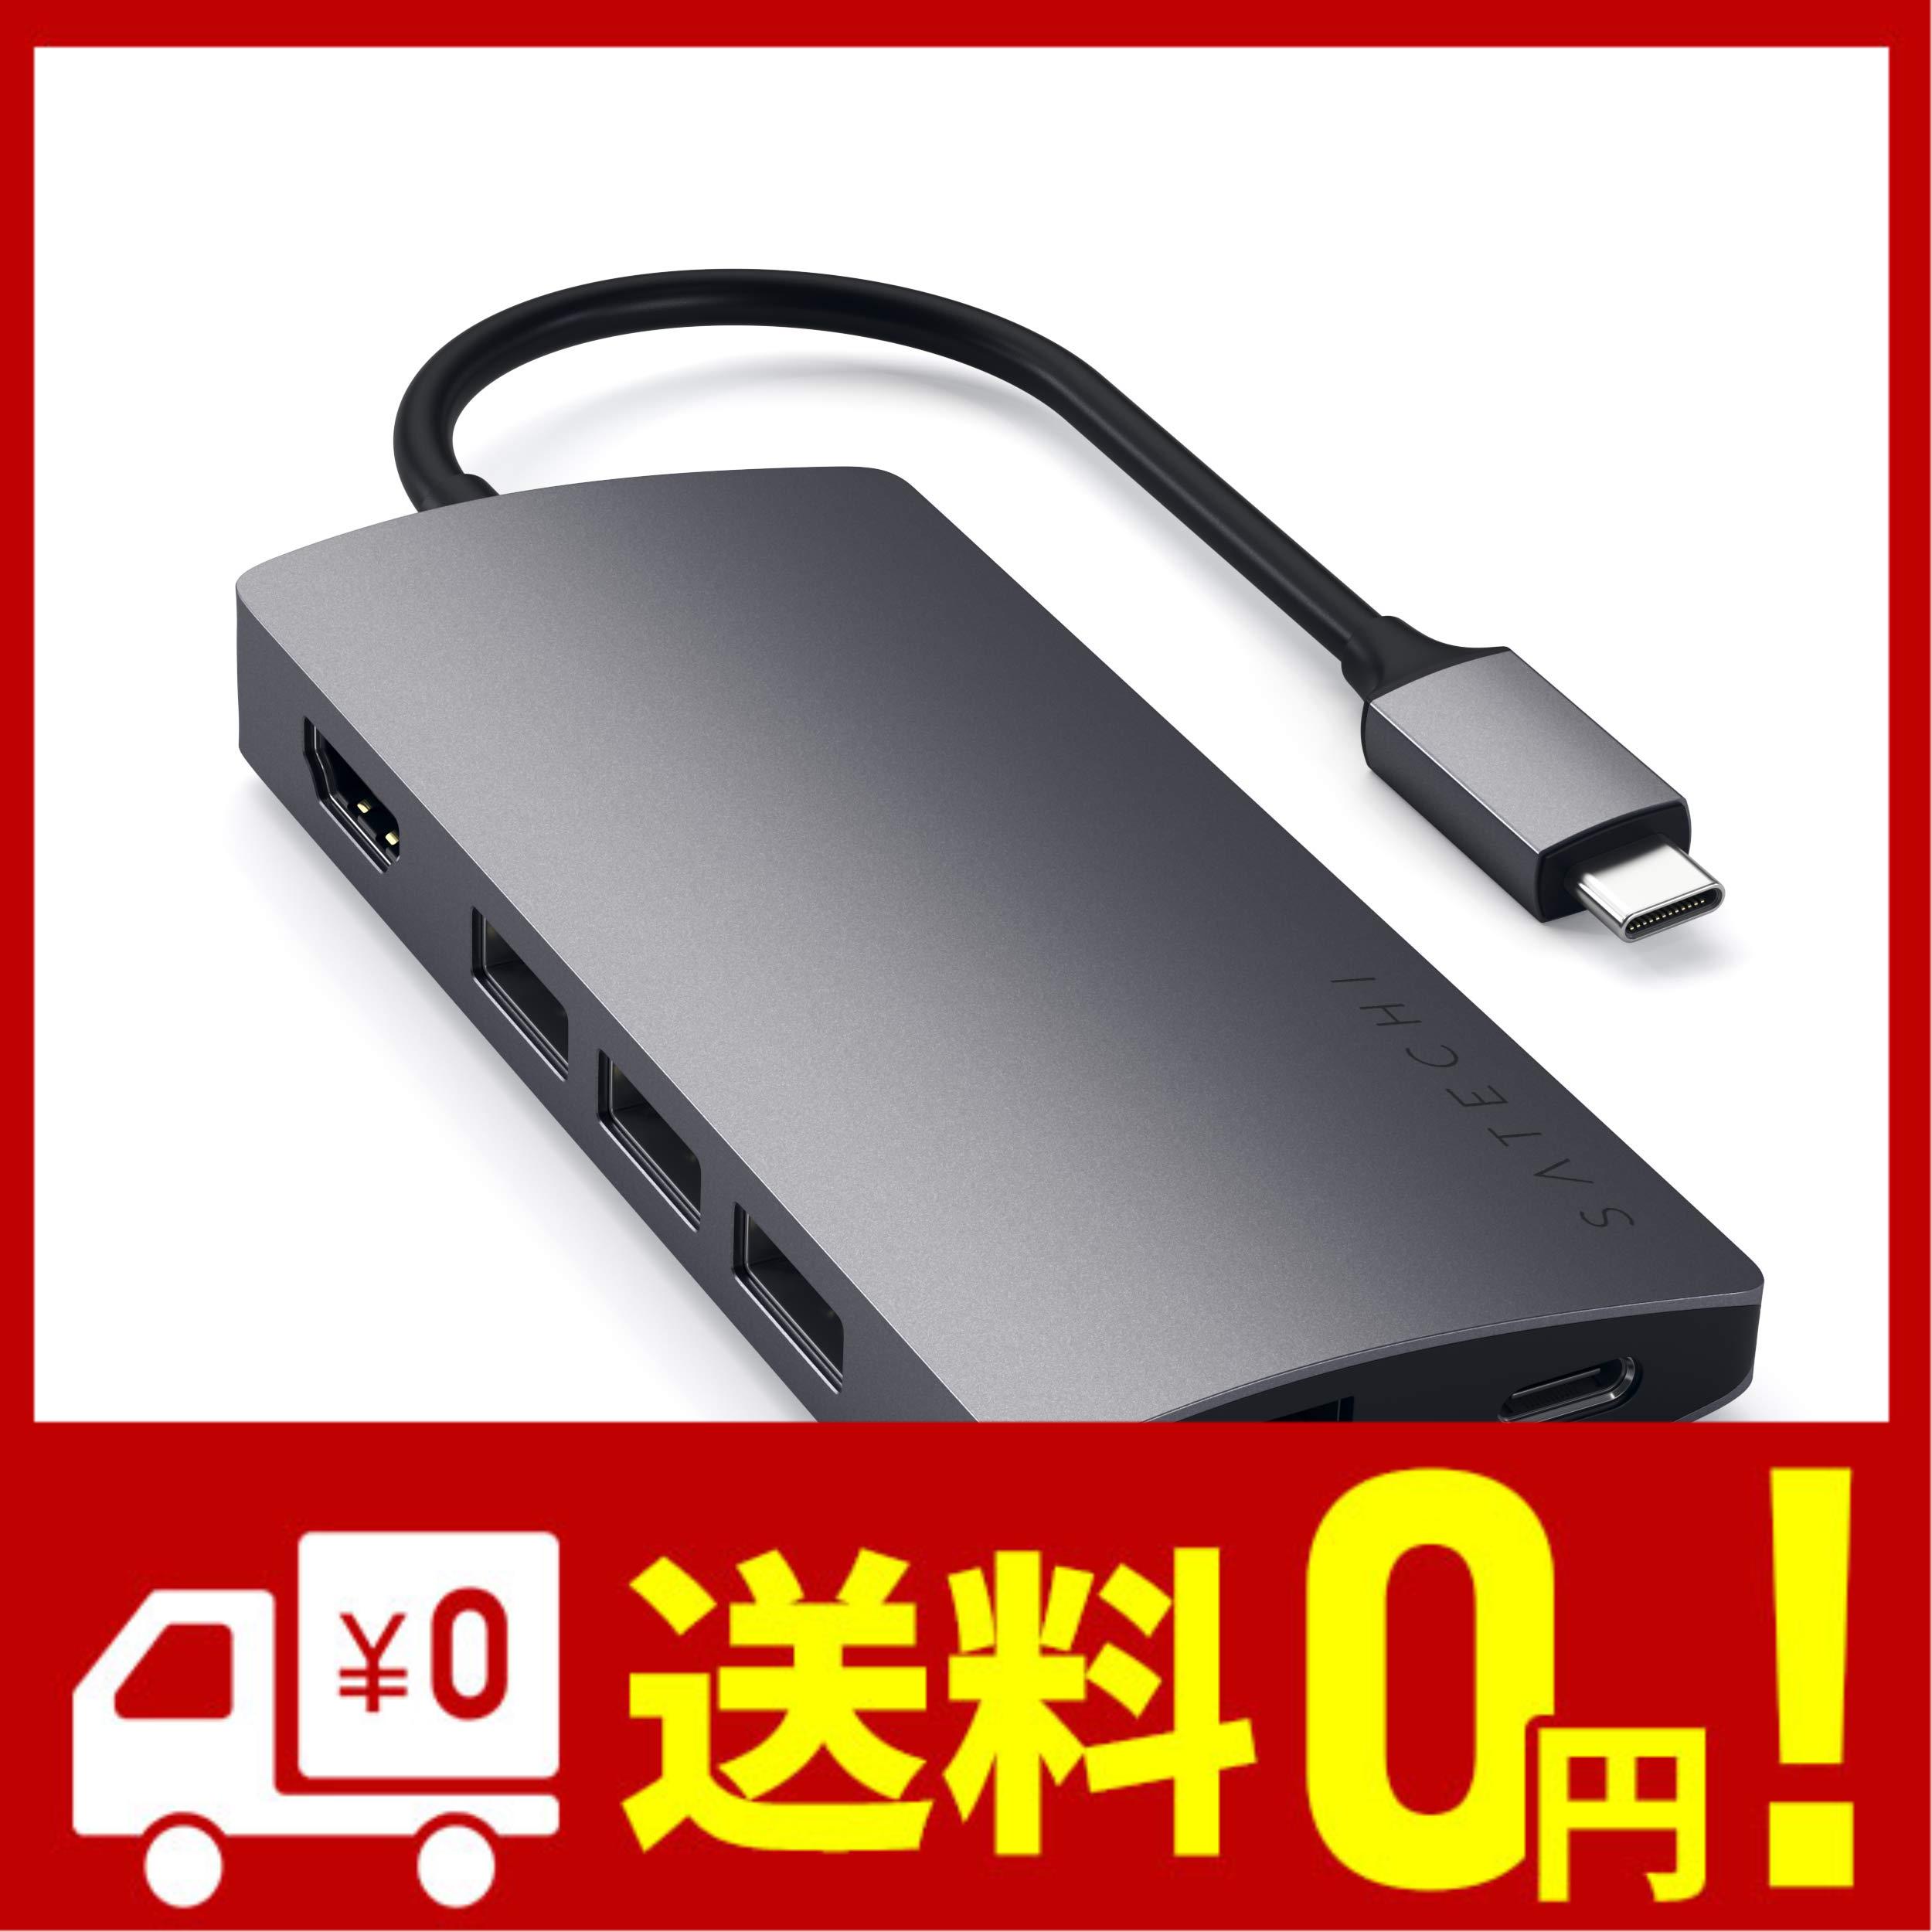 Satechi V2 マルチ USB-C ハブ 8-in-1 スペースグレイ 4K HDMI 60Hz イーサネット USBC PD充電 SDカードリーダー USB3.0ポートx3